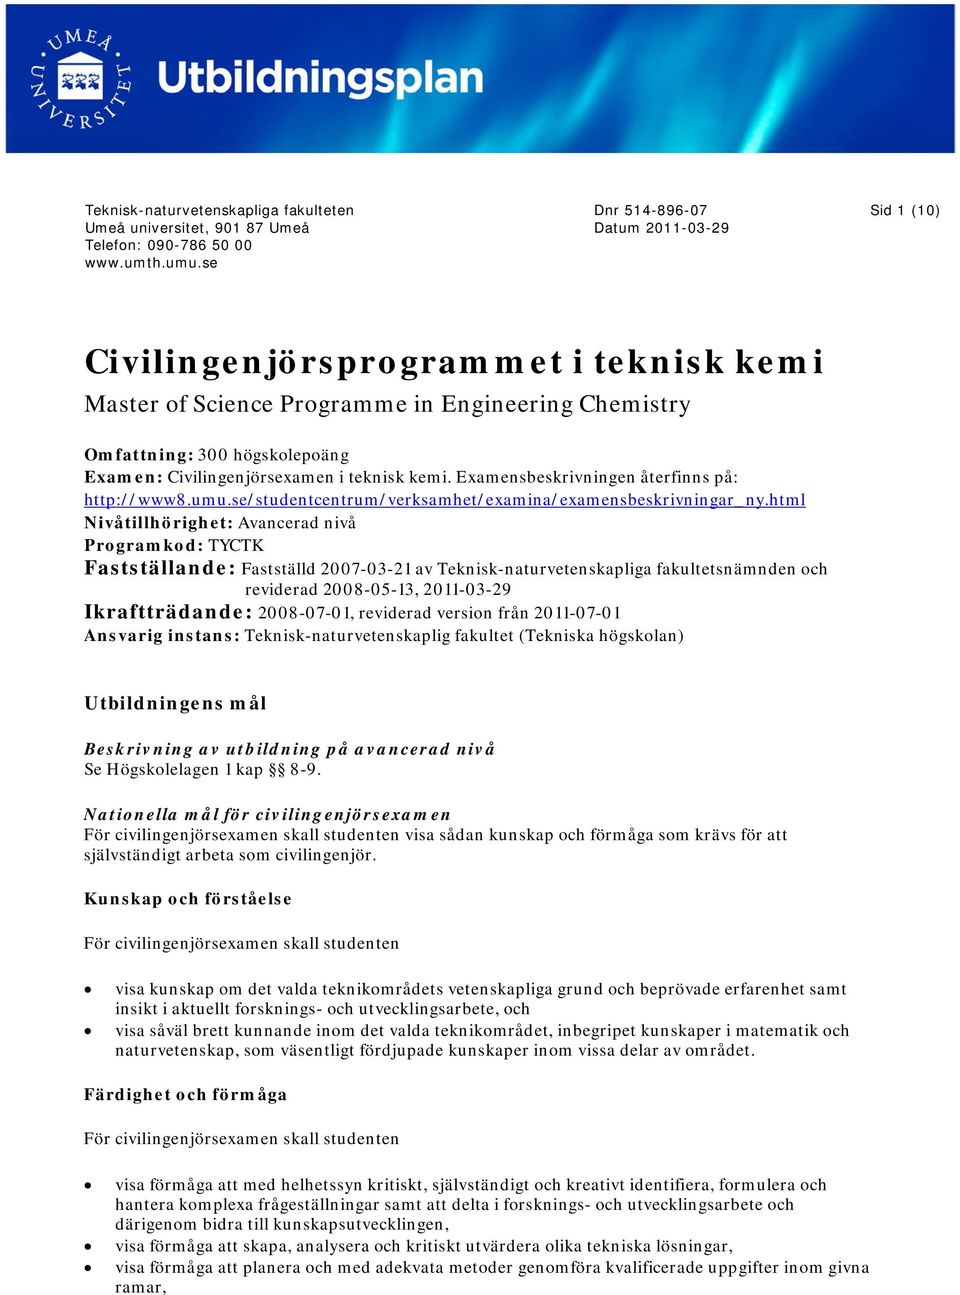 teknisk kemi. Examensbeskrivningen återfinns på: http://www8.umu.se/studentcentrum/verksamhet/examina/examensbeskrivningar_ny.